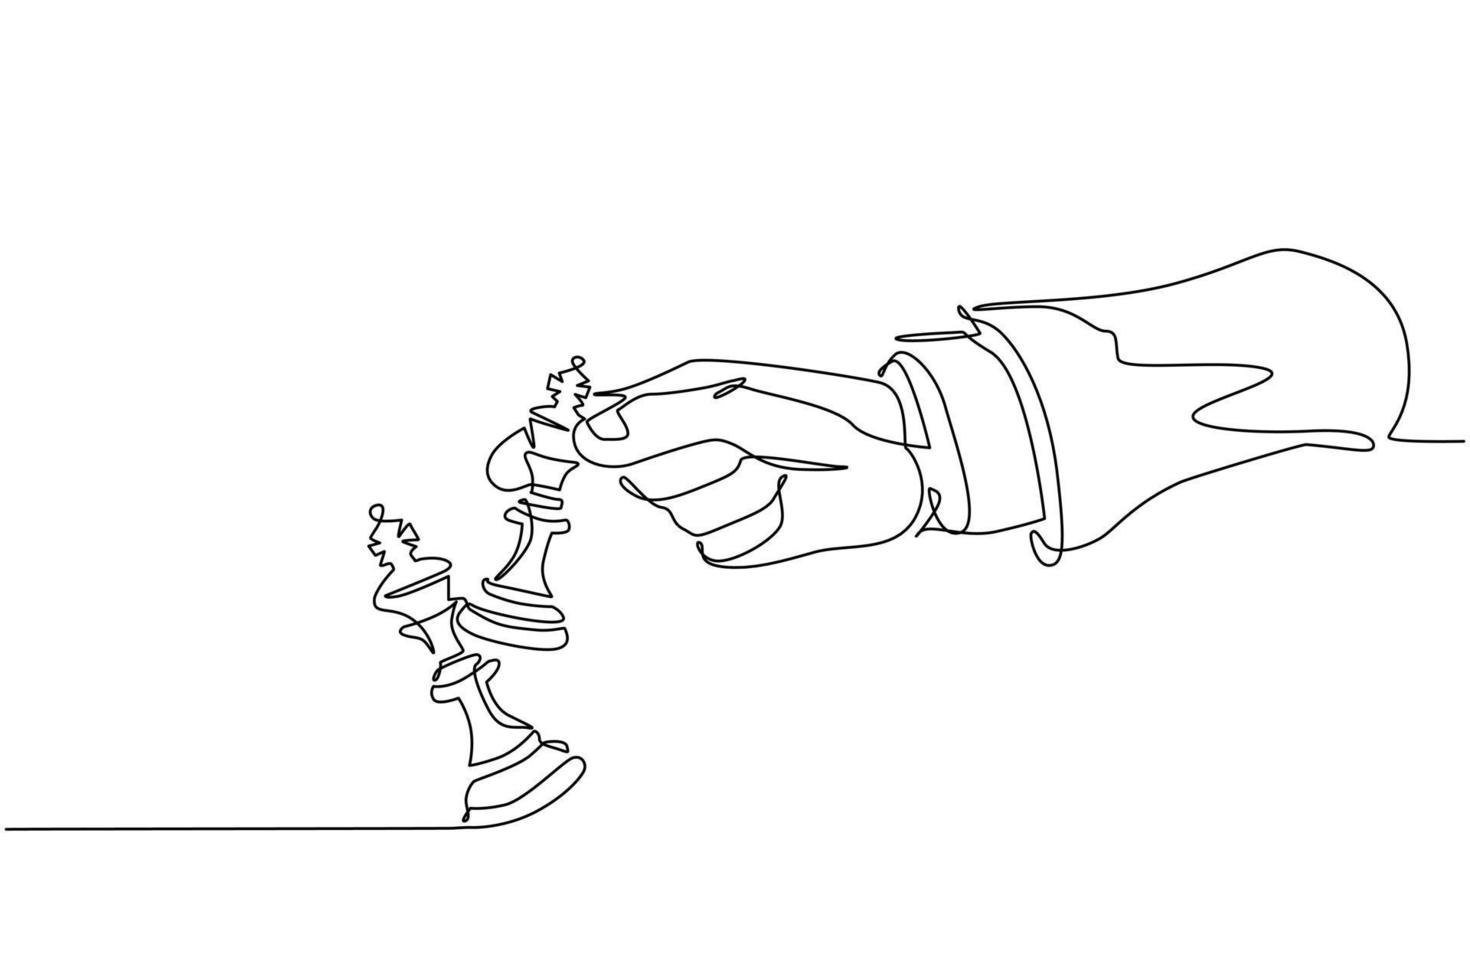 Desenho de arte de linha única do rei do xadrez, ilustração